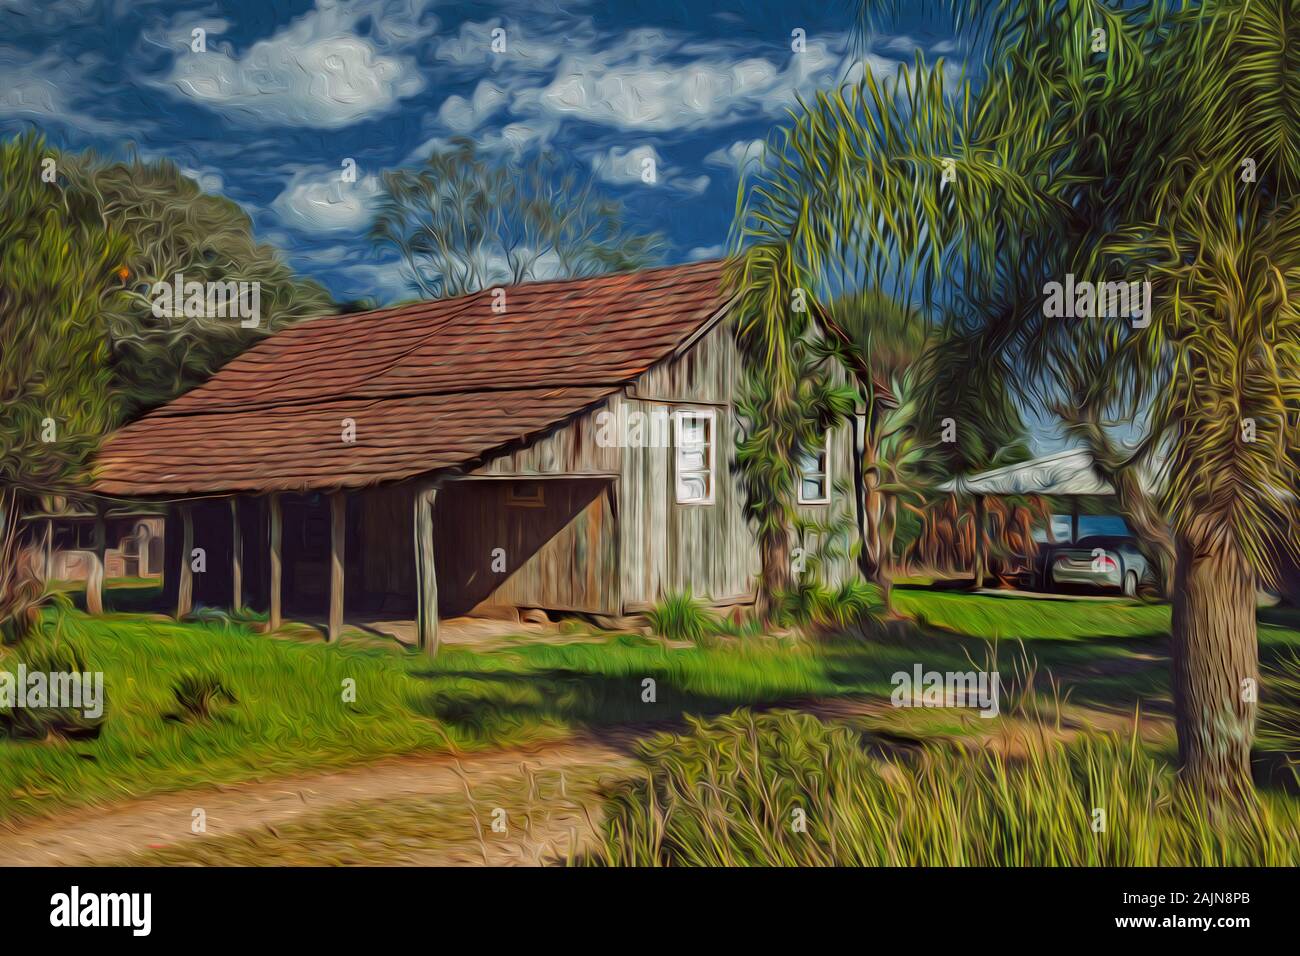 Vecchia baracca di legno in un tradizionale stile rurale con vegetazione lussureggiante, vicino a Bento Goncalves. Un paese di campagna nel sud del Brasile. Pittura a olio filtro. Foto Stock